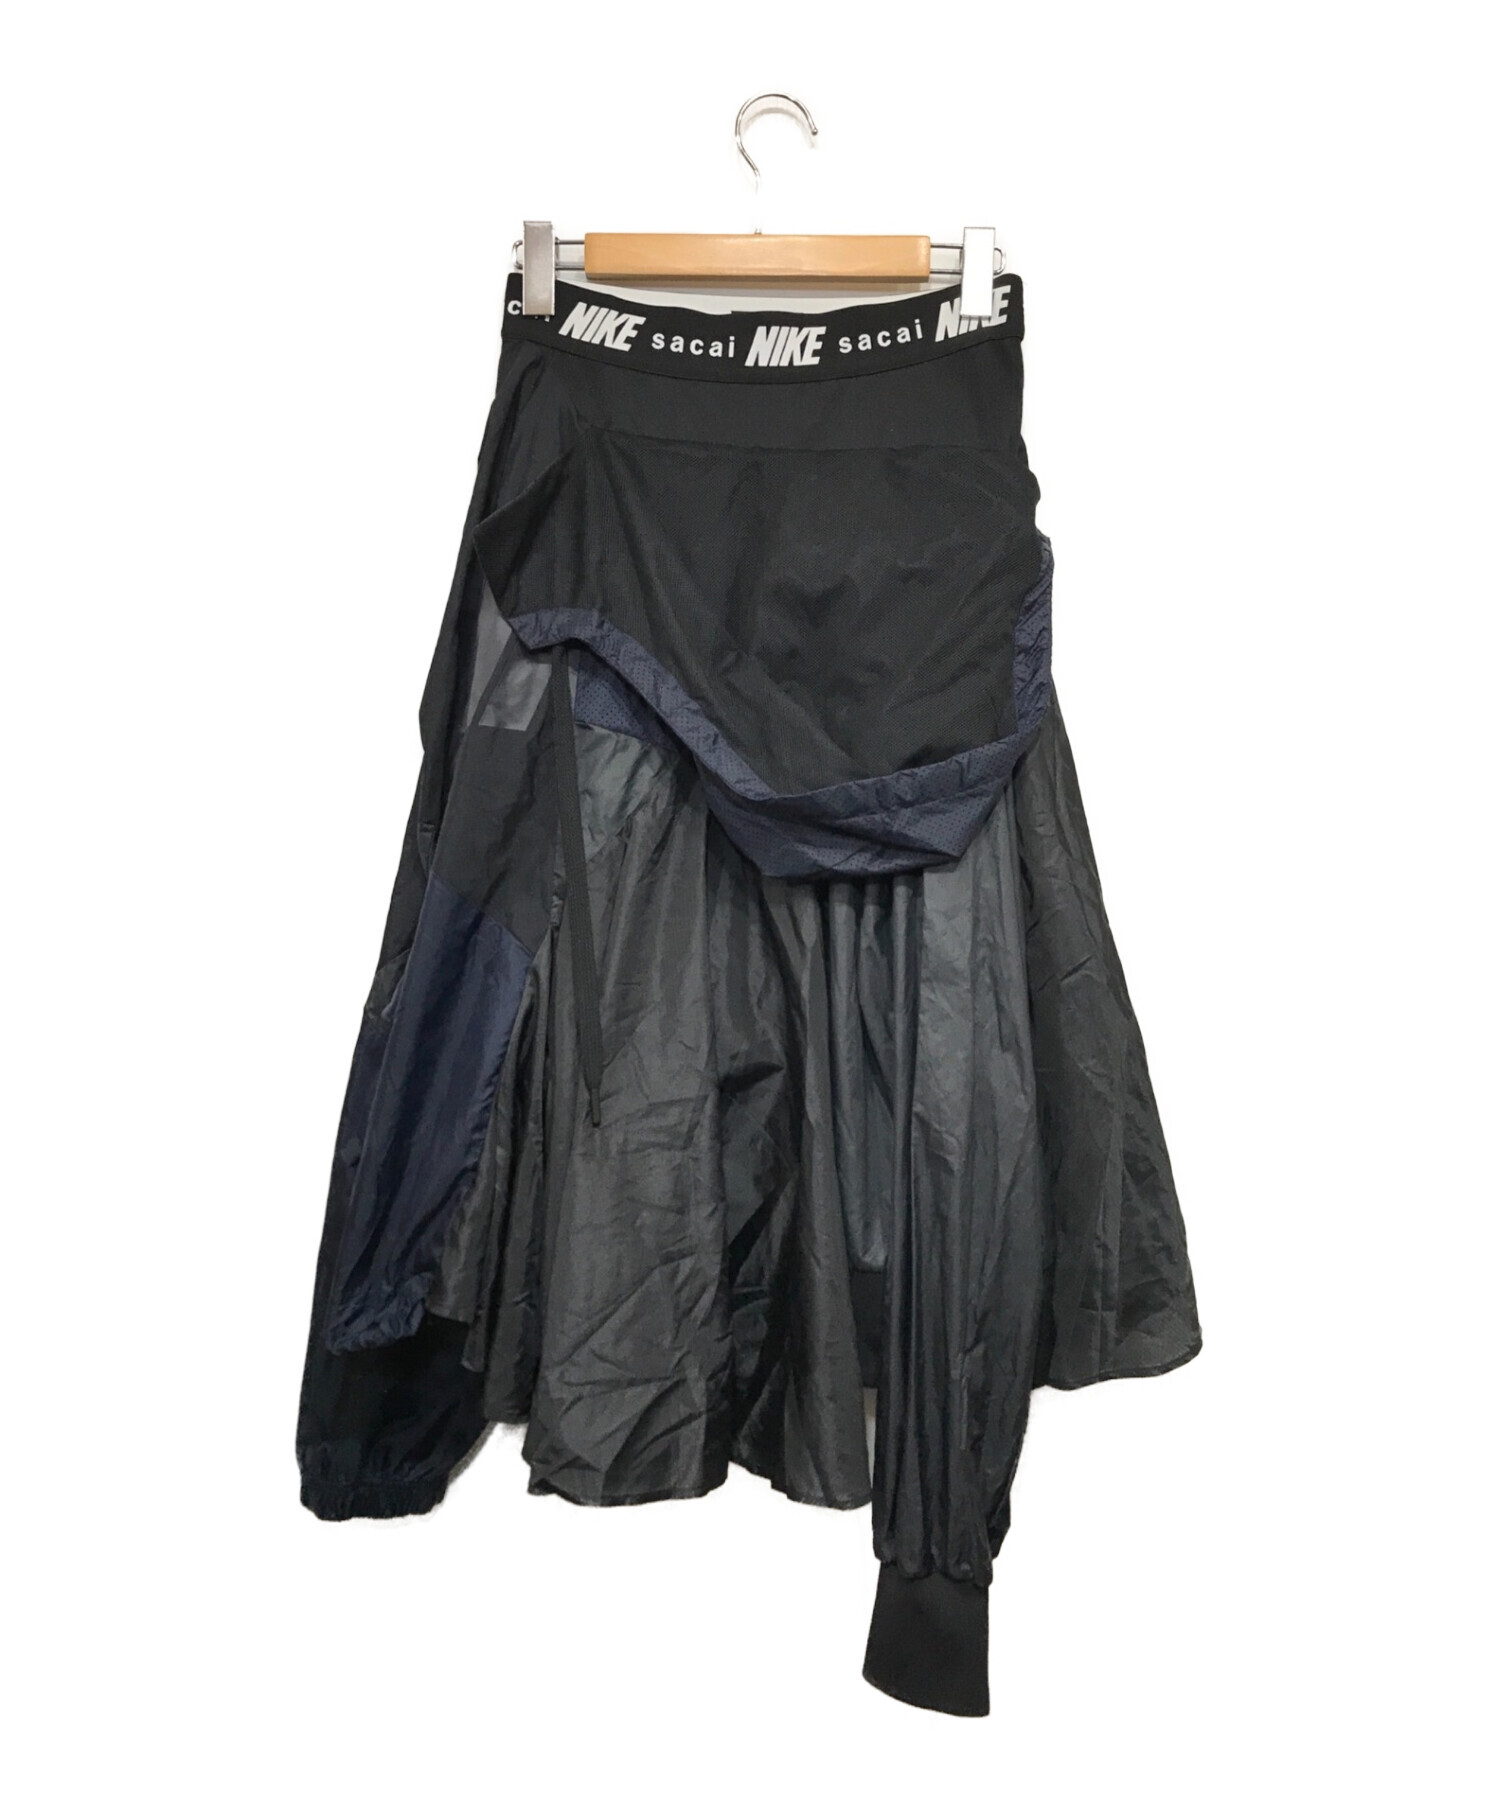 NIKE (ナイキ) sacai (サカイ) 再構築ナイロンスカート ネイビー×ブラック サイズ:Ｓ